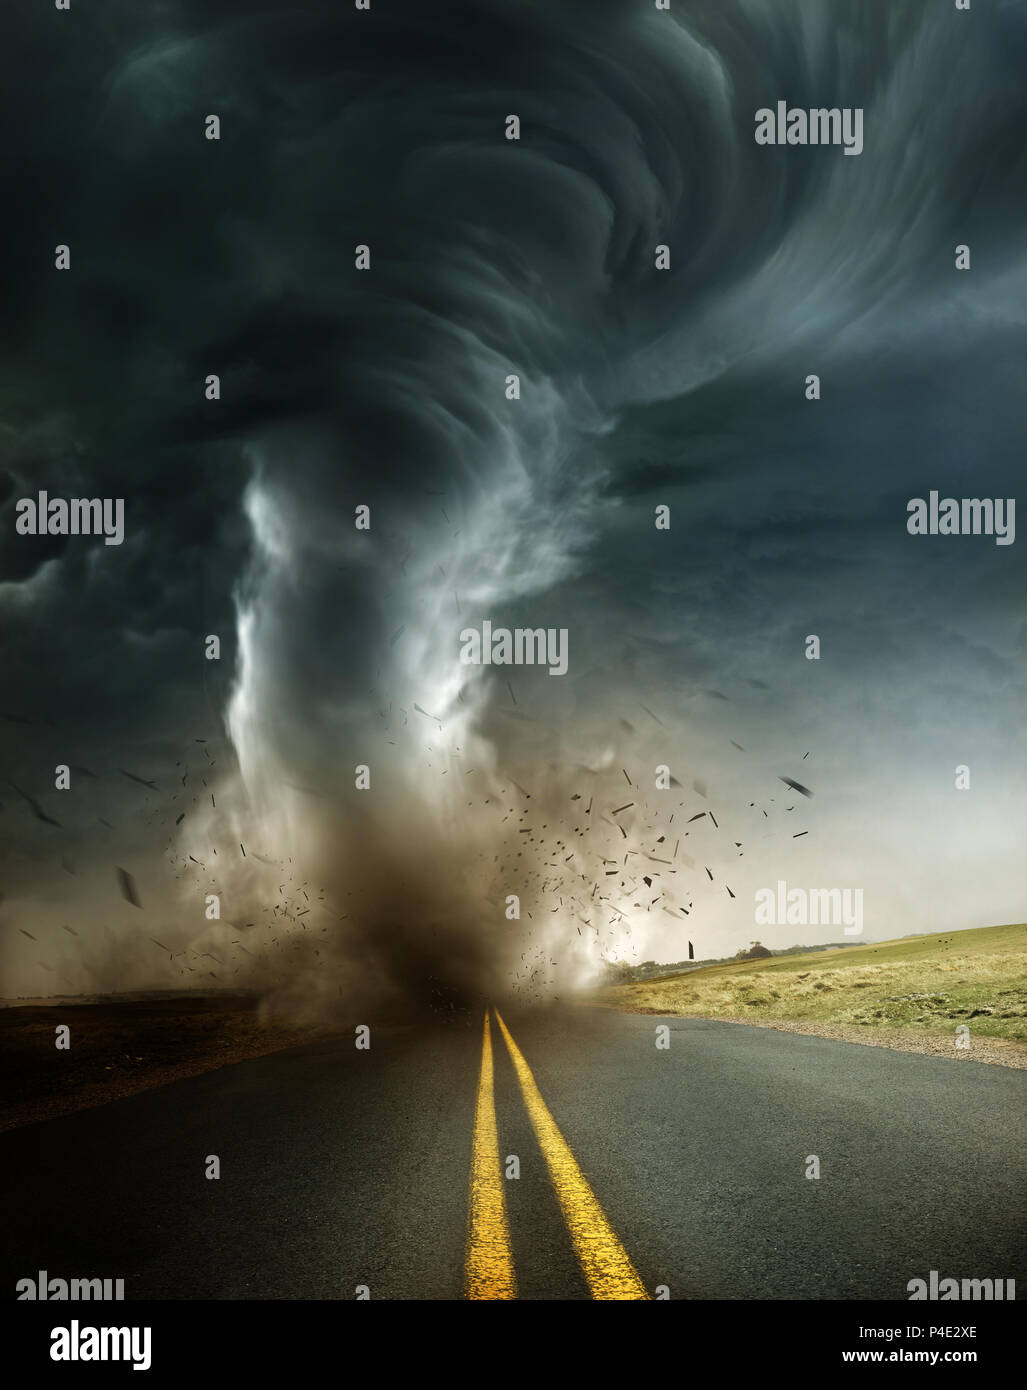 Eine leistungsstarke supercell Sturm produzieren eine destruktive Tornado berühren Sie auf einer abgelegenen Landstraße. Mixed media Abbildung. Stockfoto